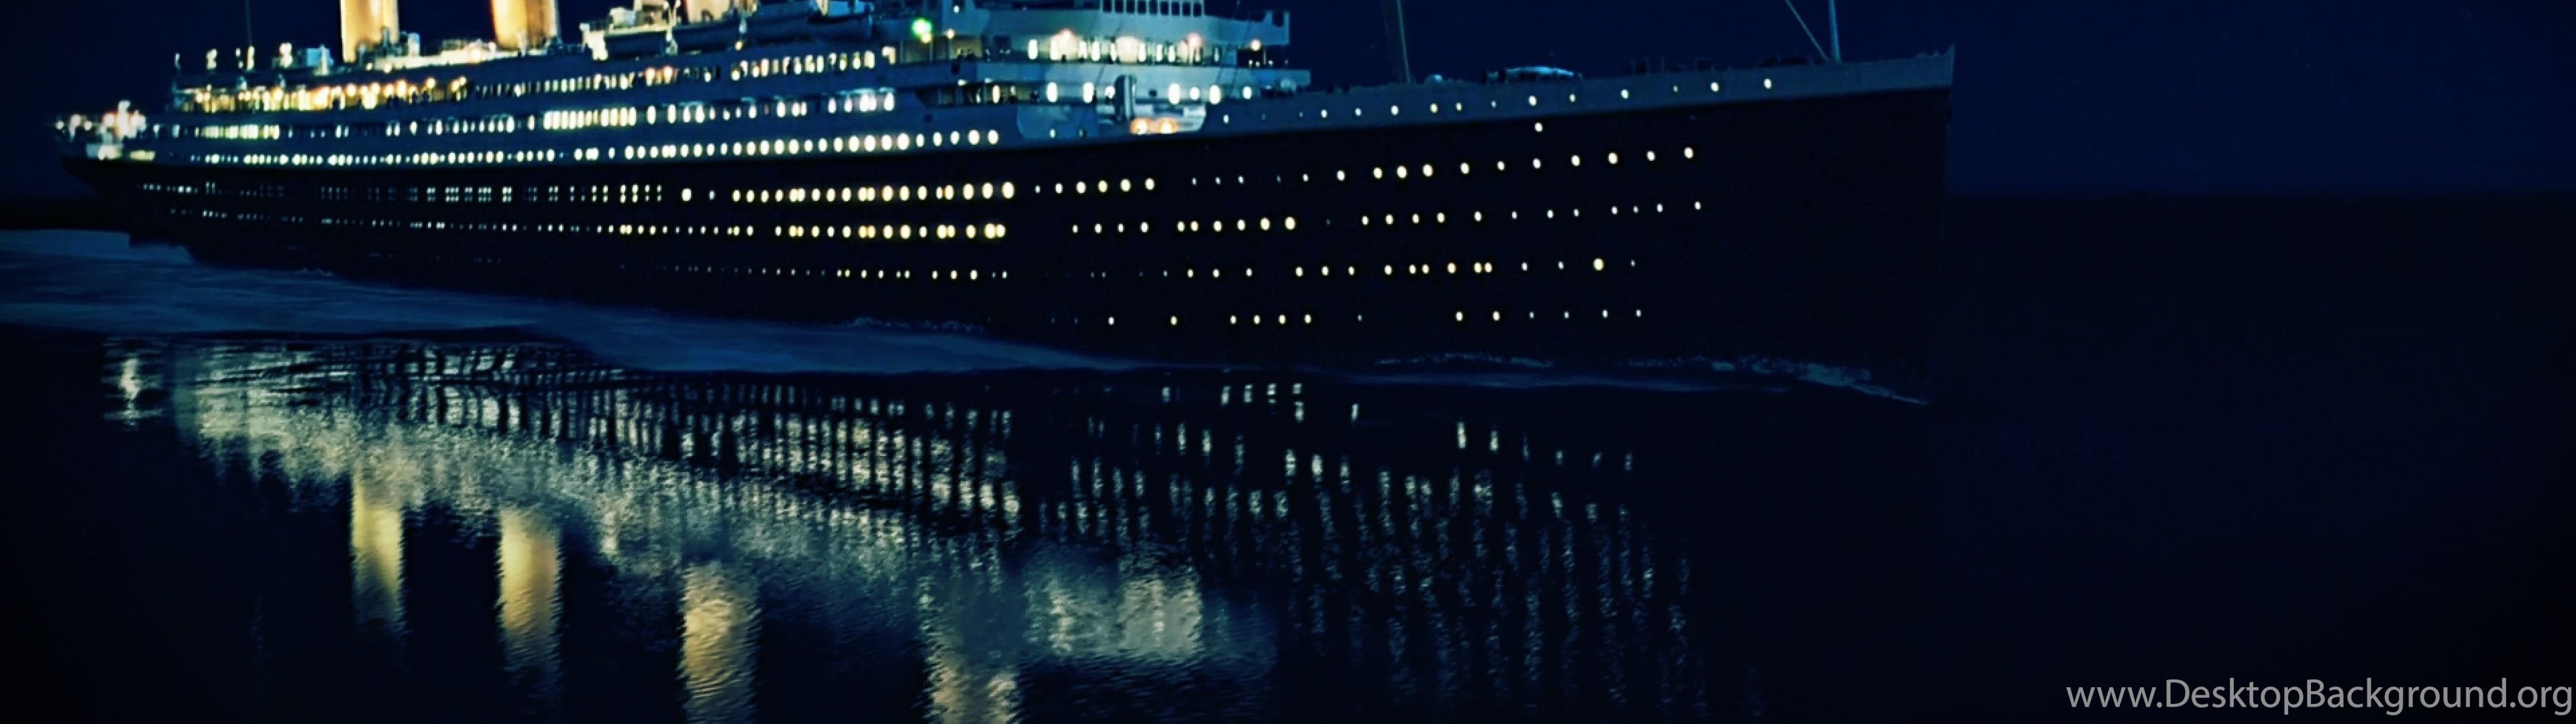 Dual Screen Wide - Titanic Ship Wallpapers Hd , HD Wallpaper & Backgrounds